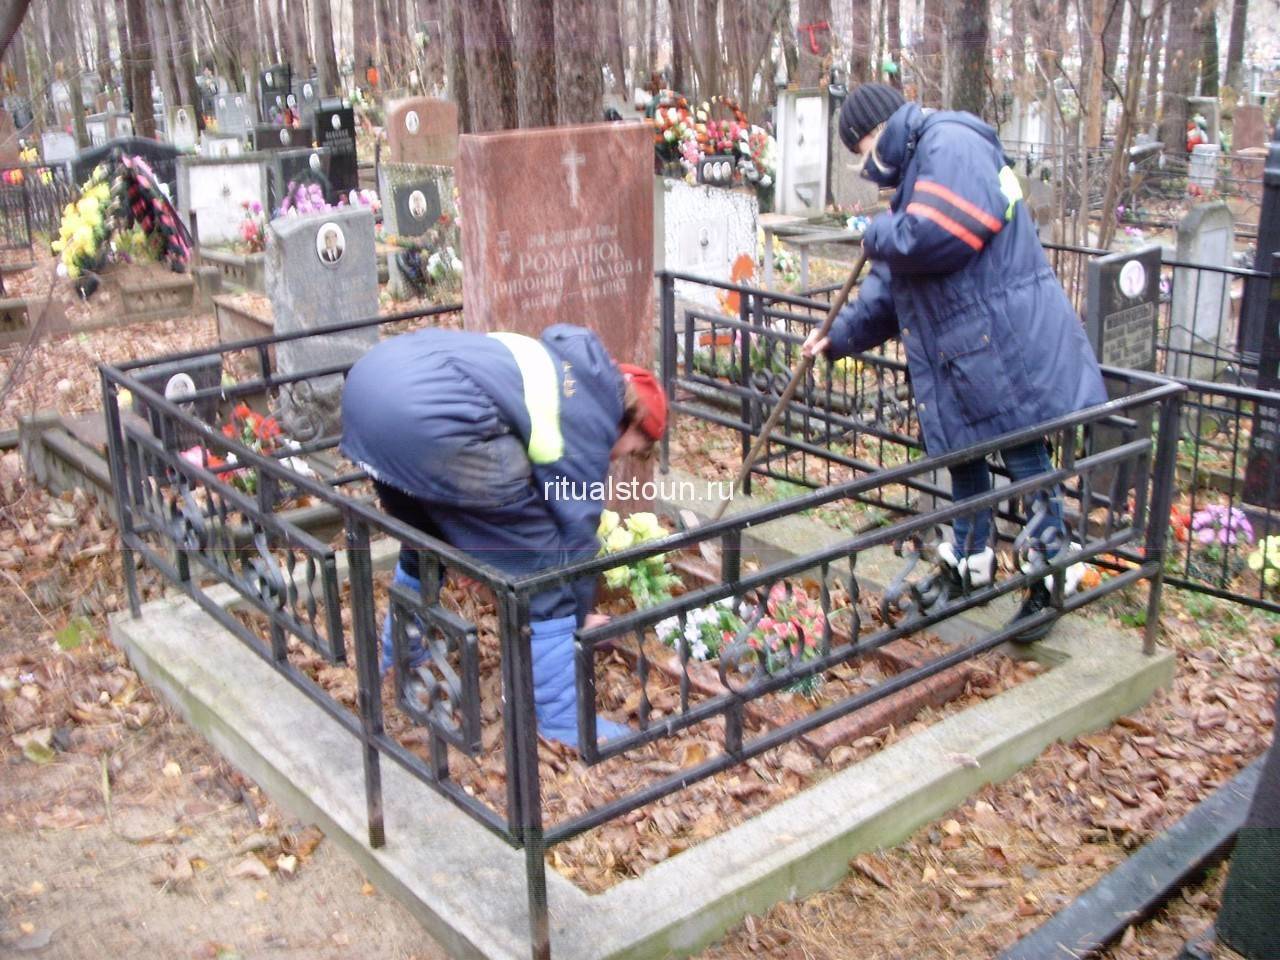 Как открыть частное кладбище в россии: документы, бизнес-план, вложения - fin-az.ru